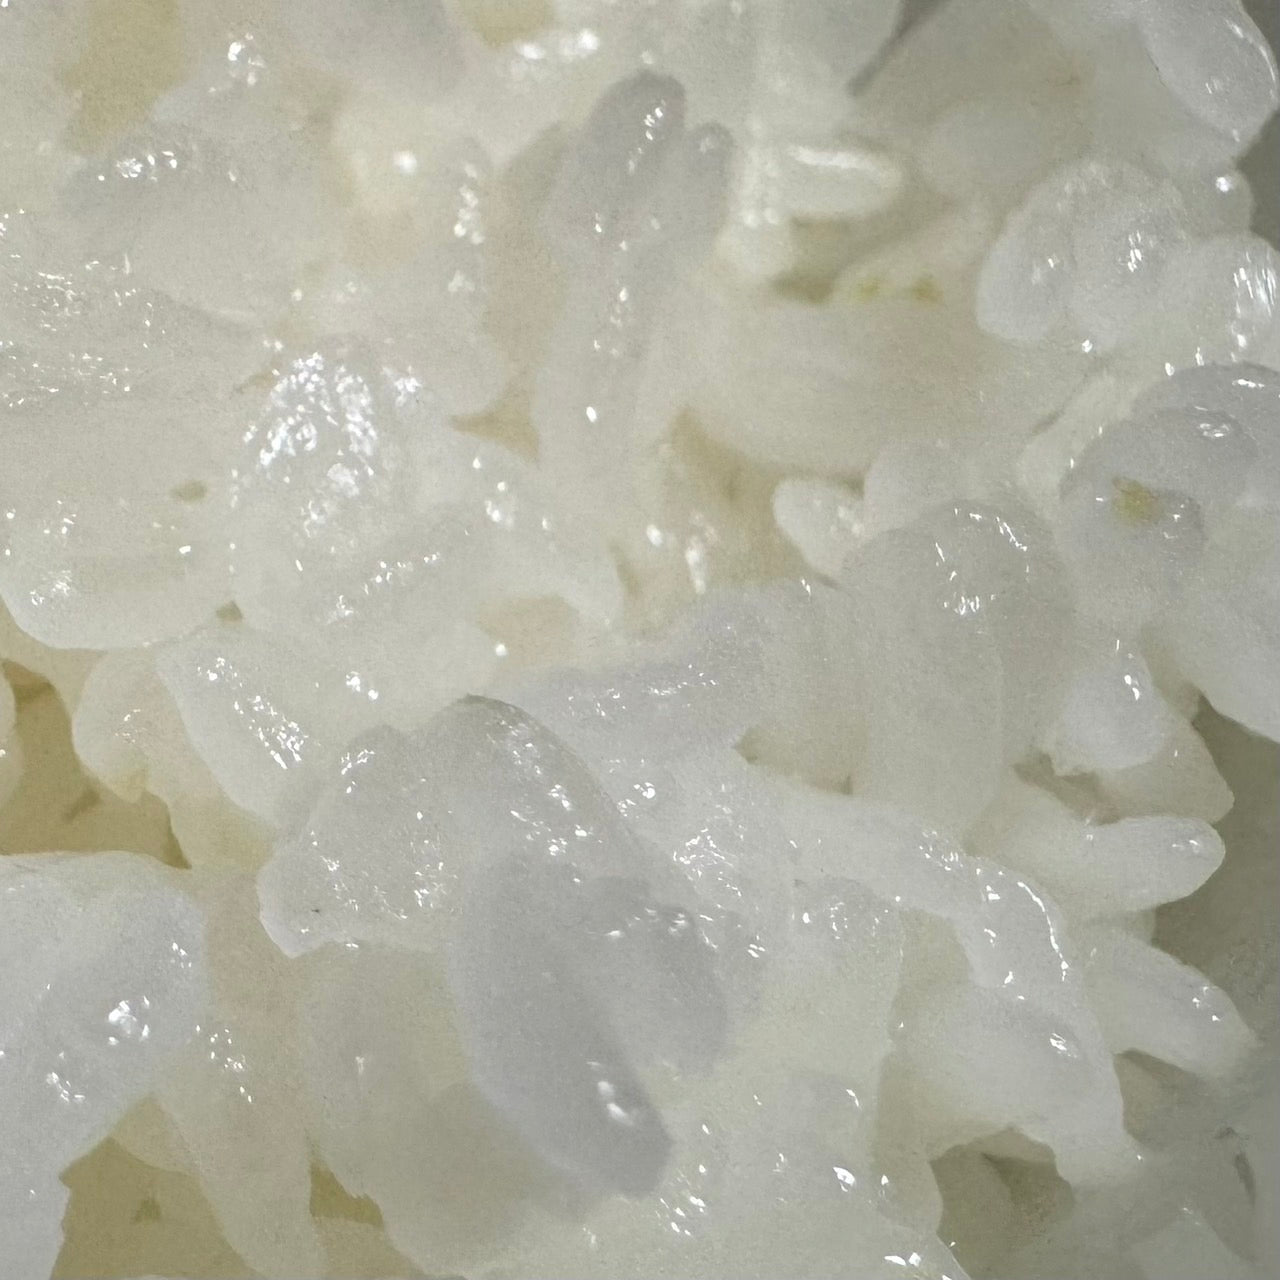 北海道米食べ比べセット（蘭越産ゆめぴりか×ななつぼし各2.5ｋｇ）令和5年産